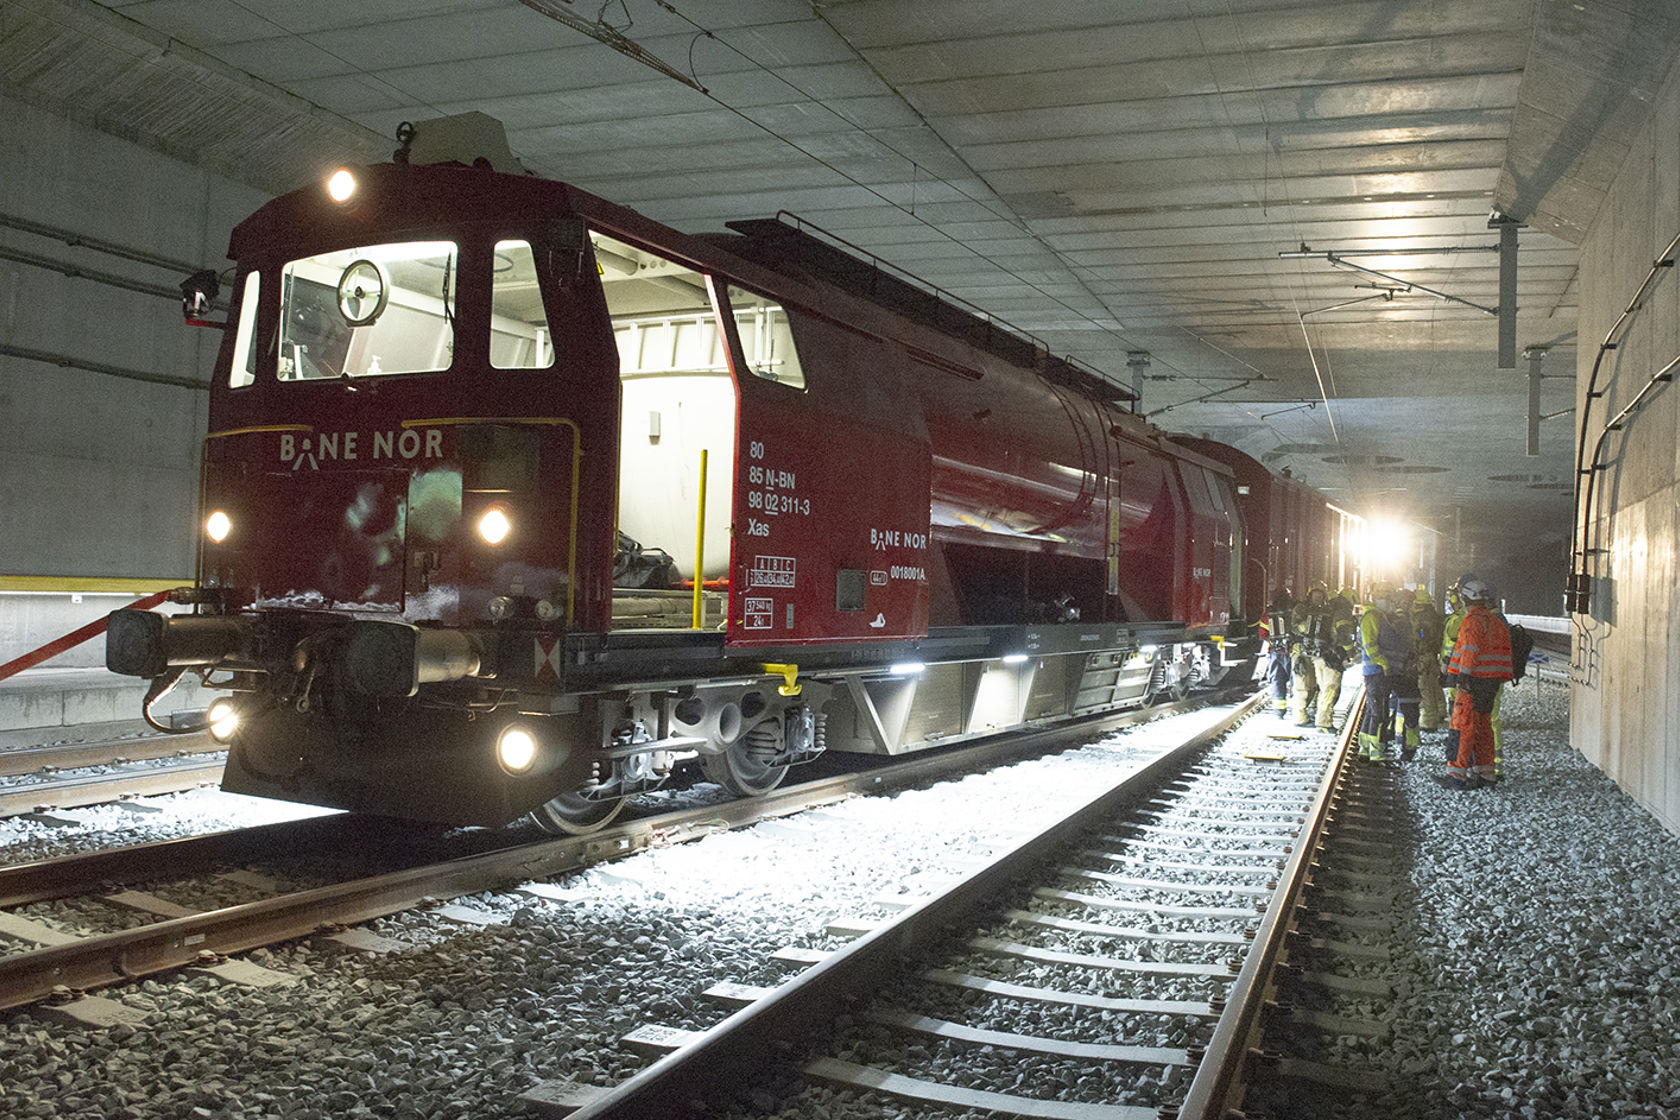 Bilde av et helt rødt tog inne i en tunnel. Toget har påskrevet teksten "Bane NOR".